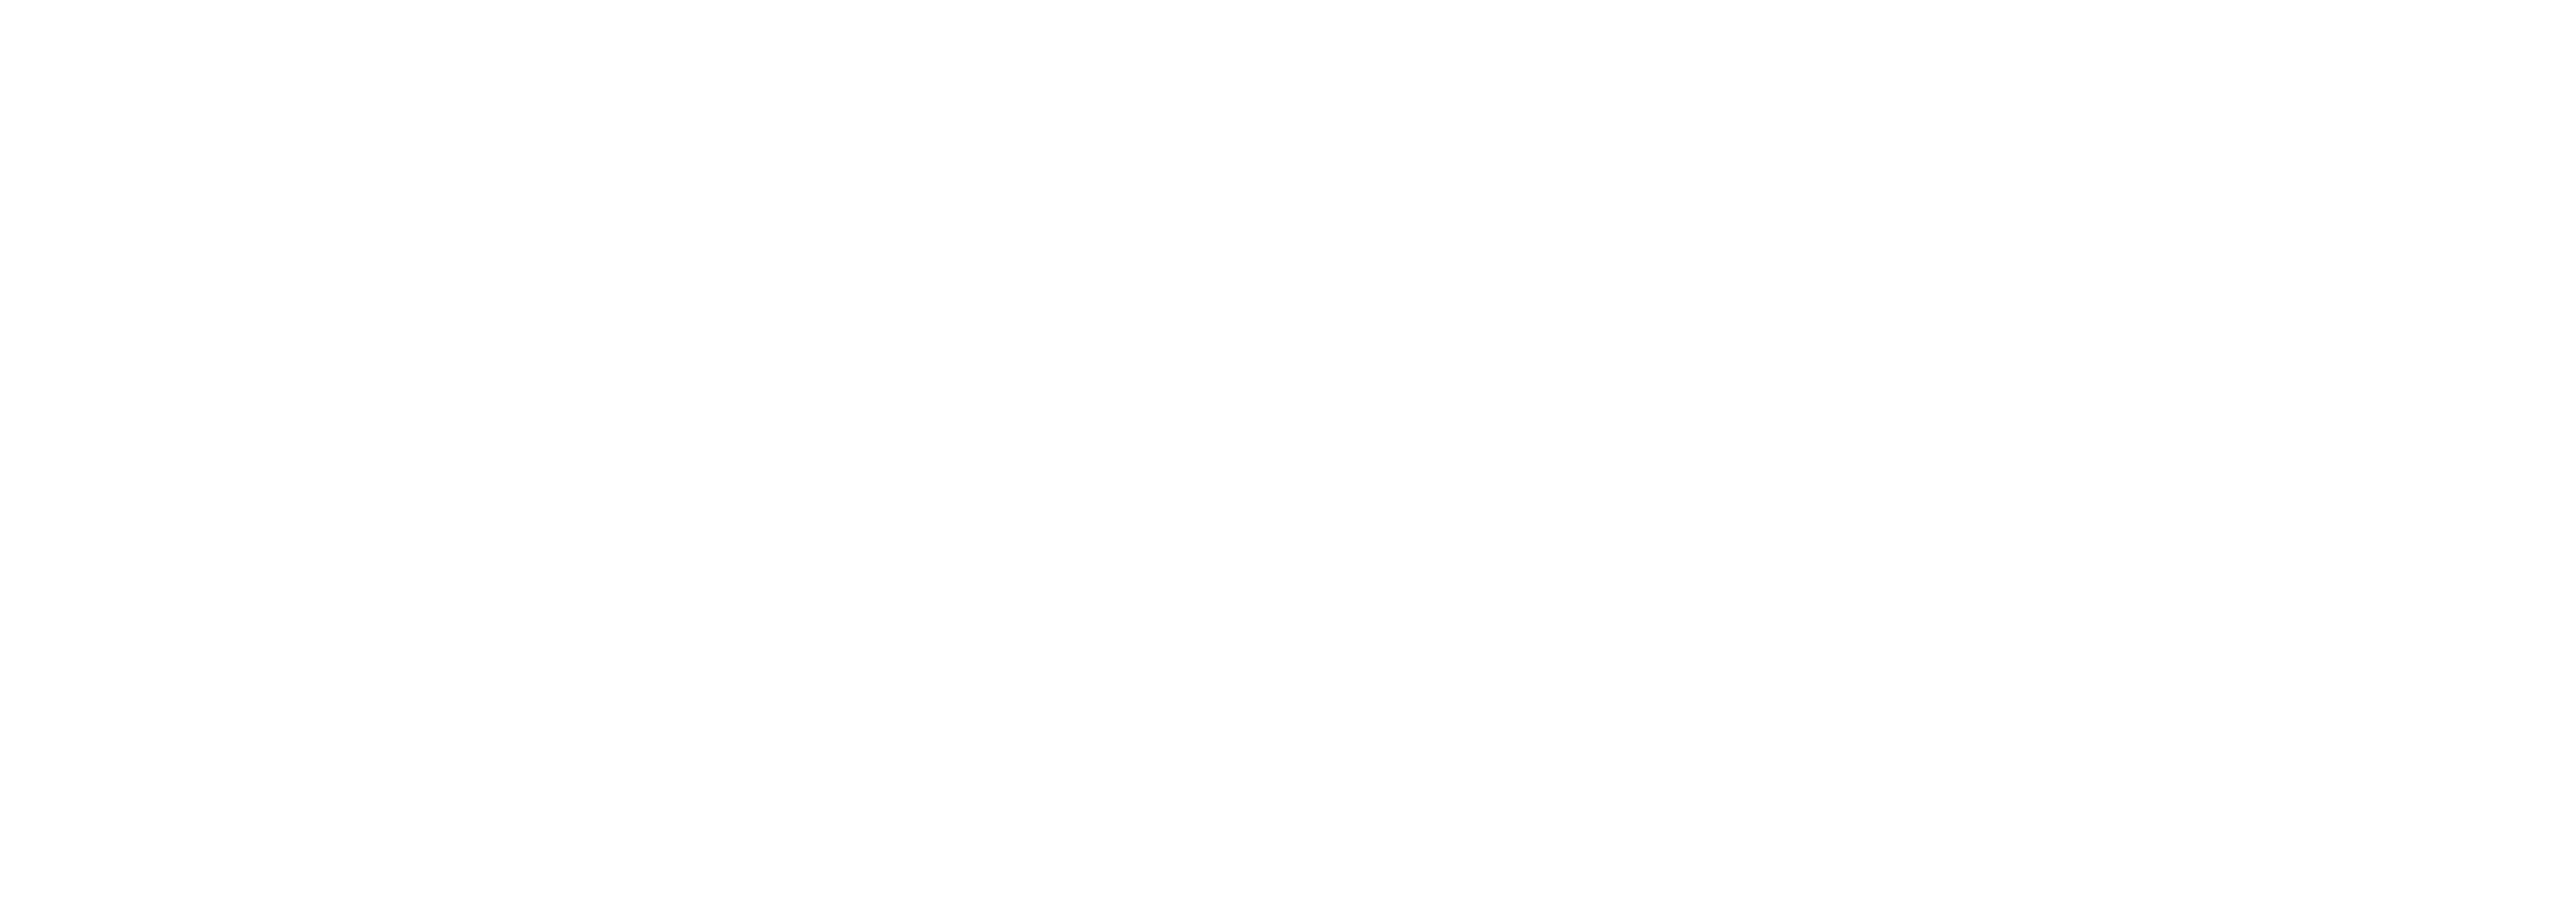 Eagle Eye Home Inspections Logo